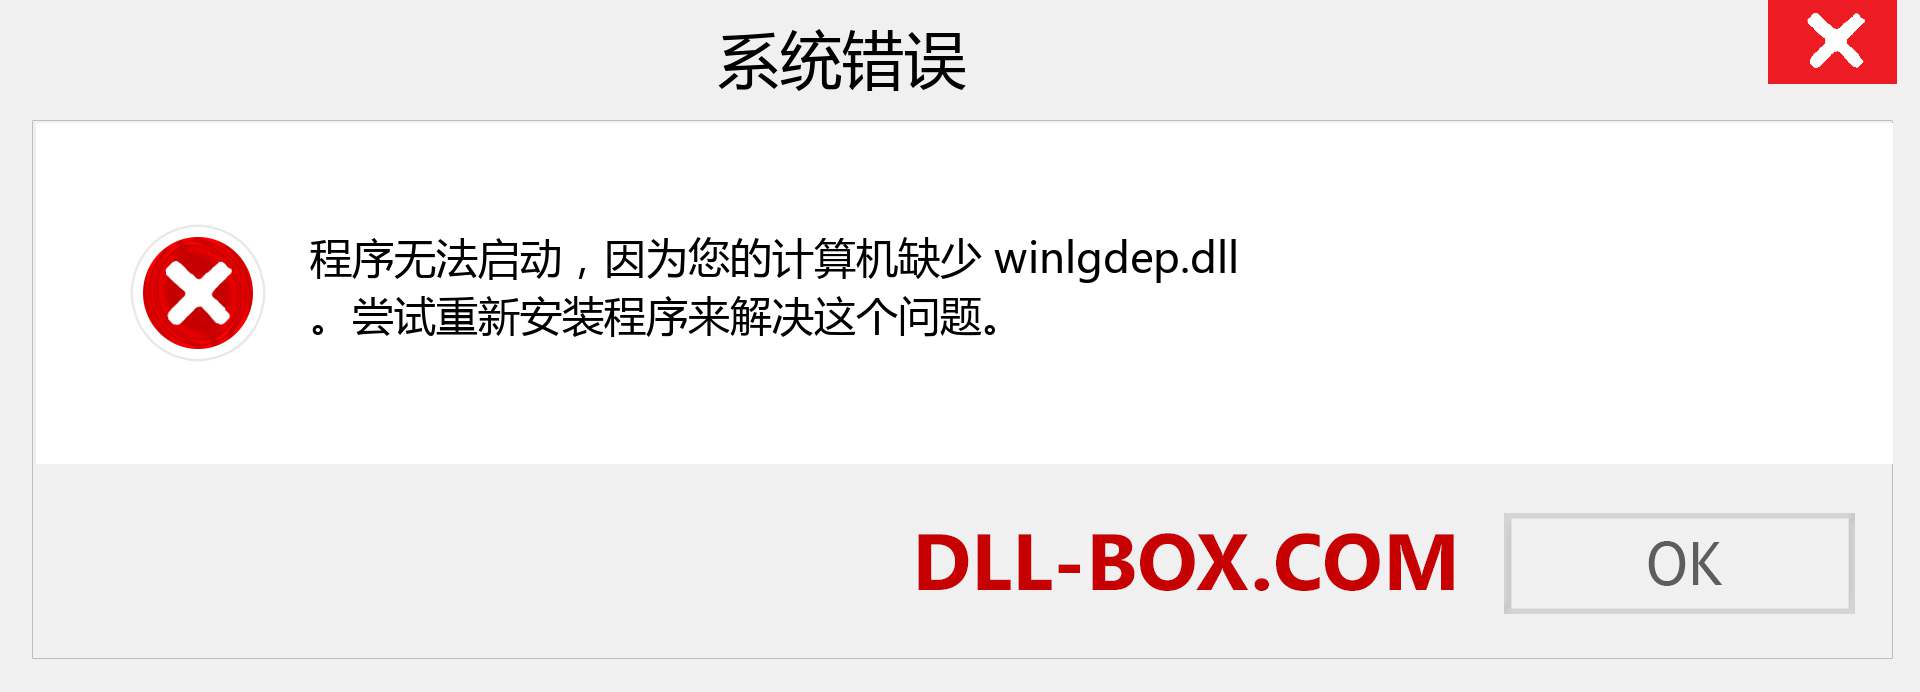 winlgdep.dll 文件丢失？。 适用于 Windows 7、8、10 的下载 - 修复 Windows、照片、图像上的 winlgdep dll 丢失错误